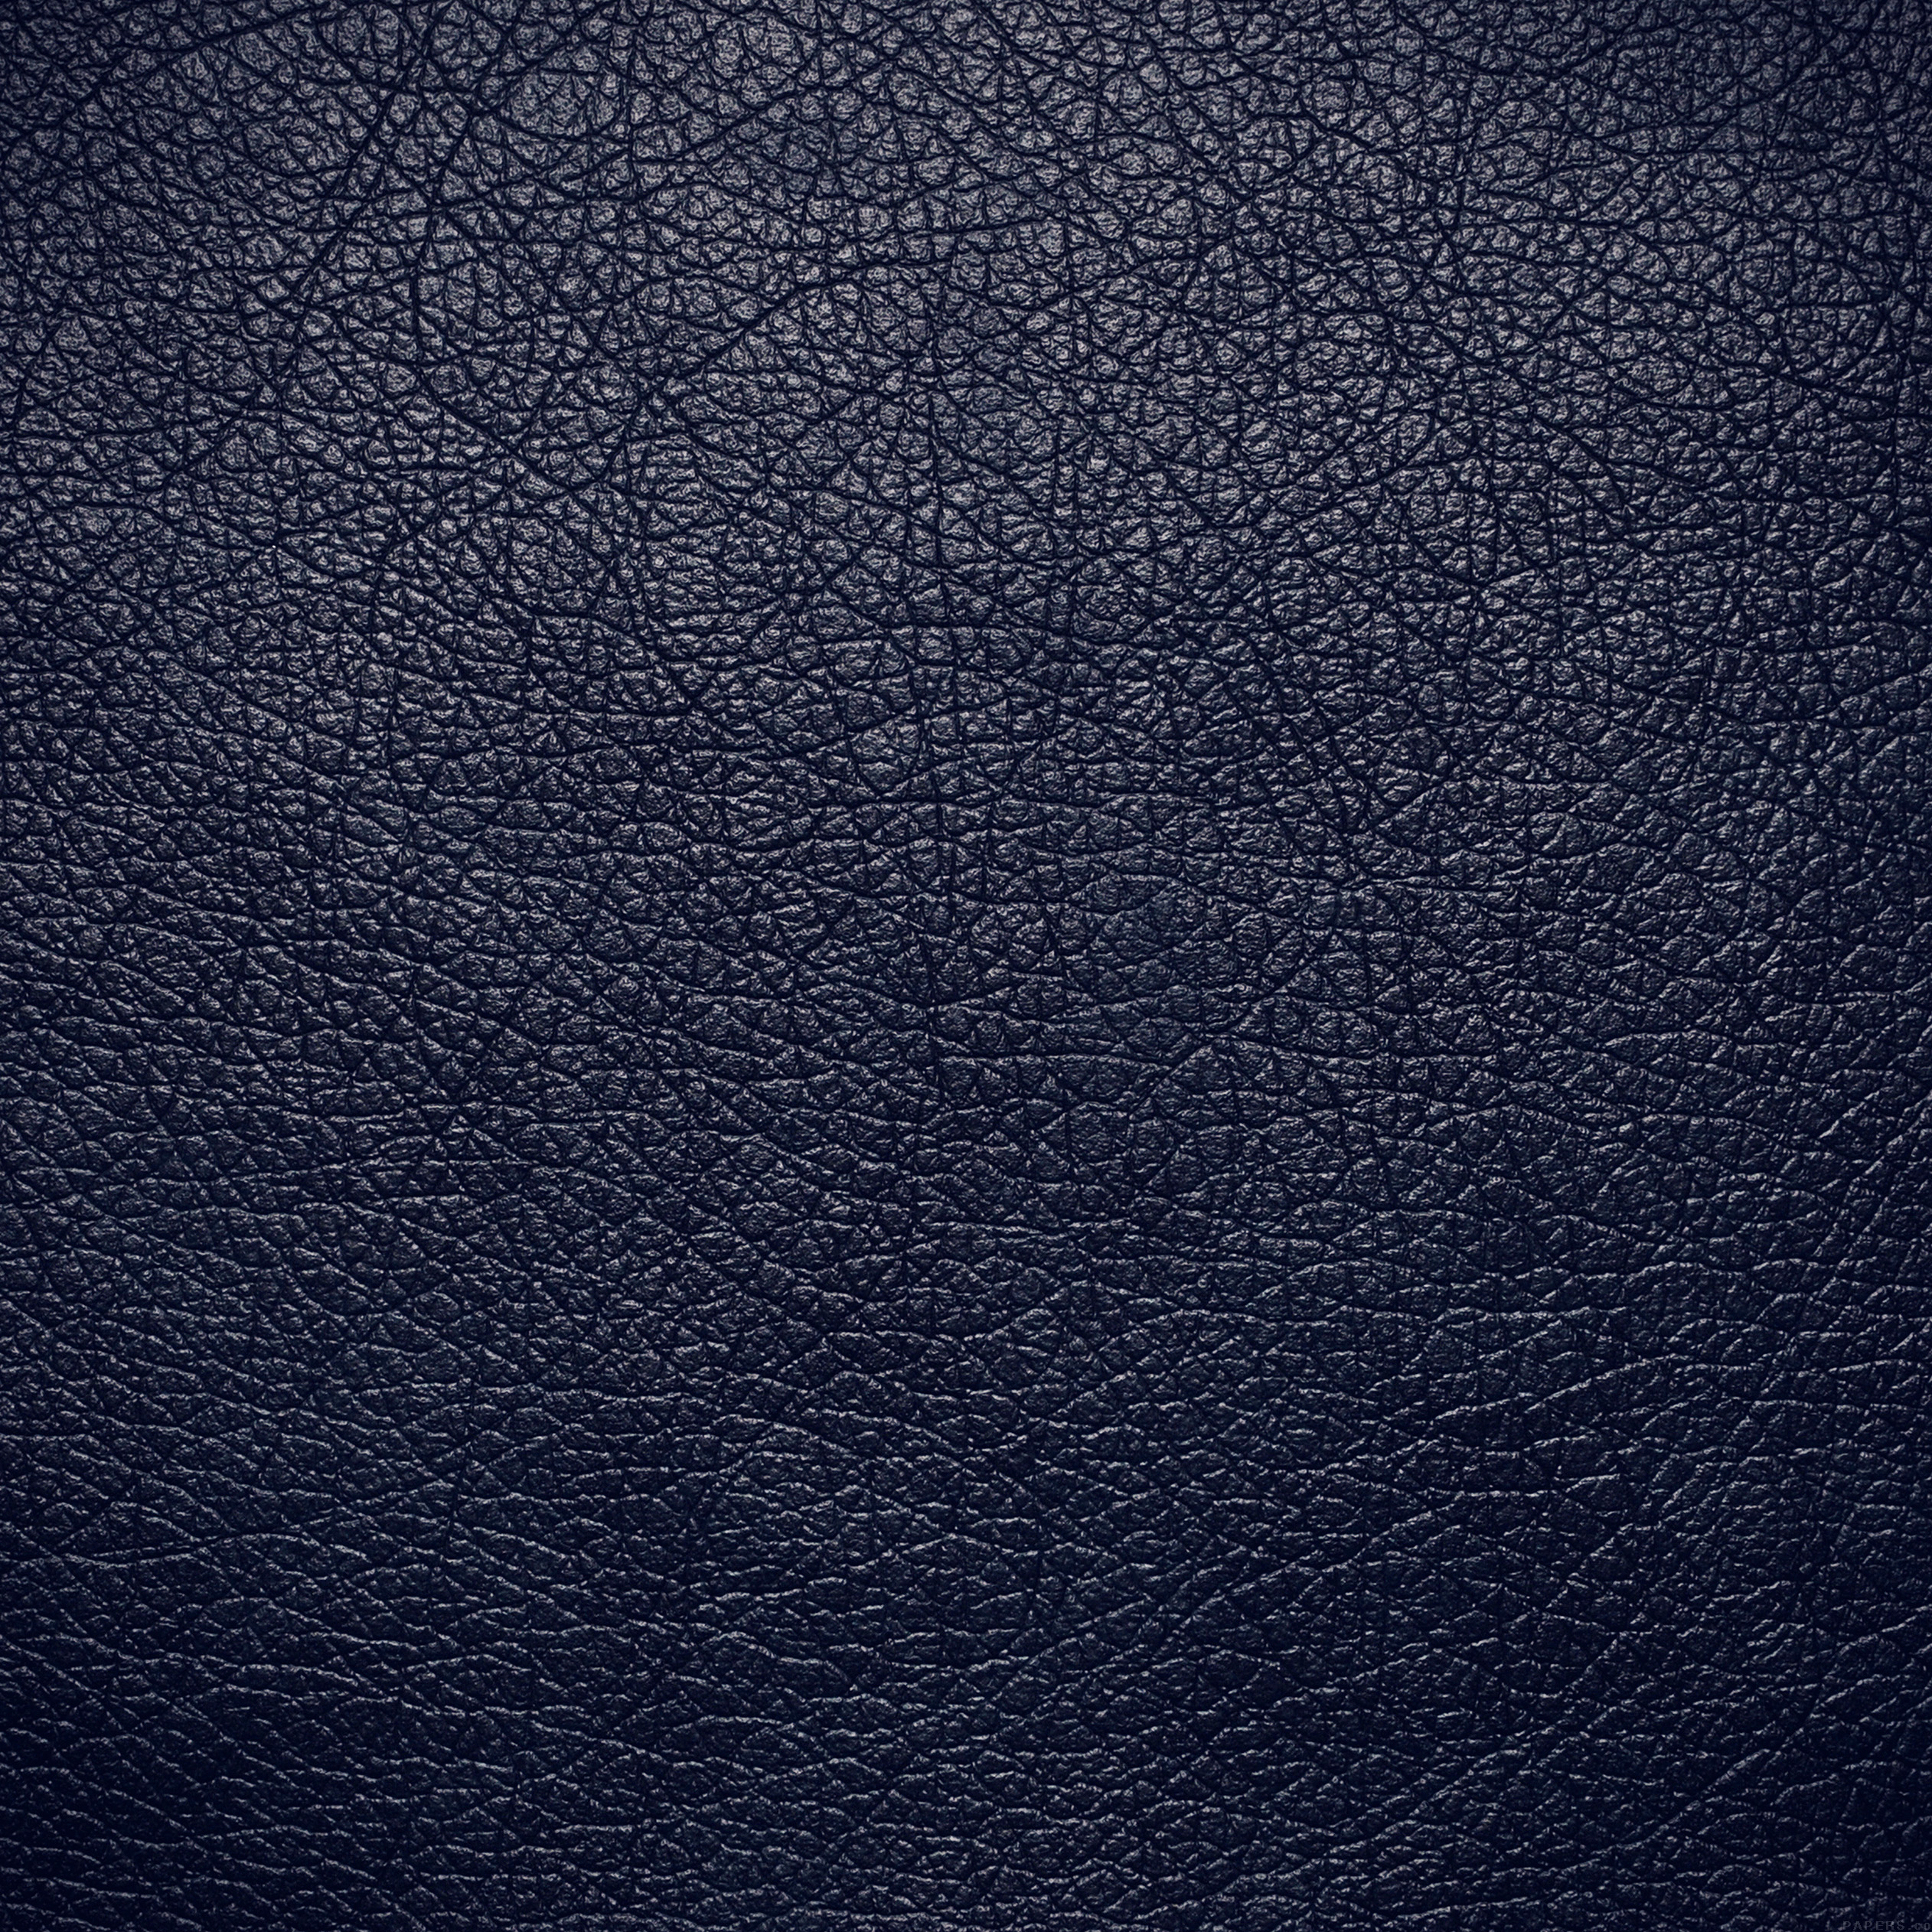 texture-skin-blue-dark-leather-pattern-9-wallpaper